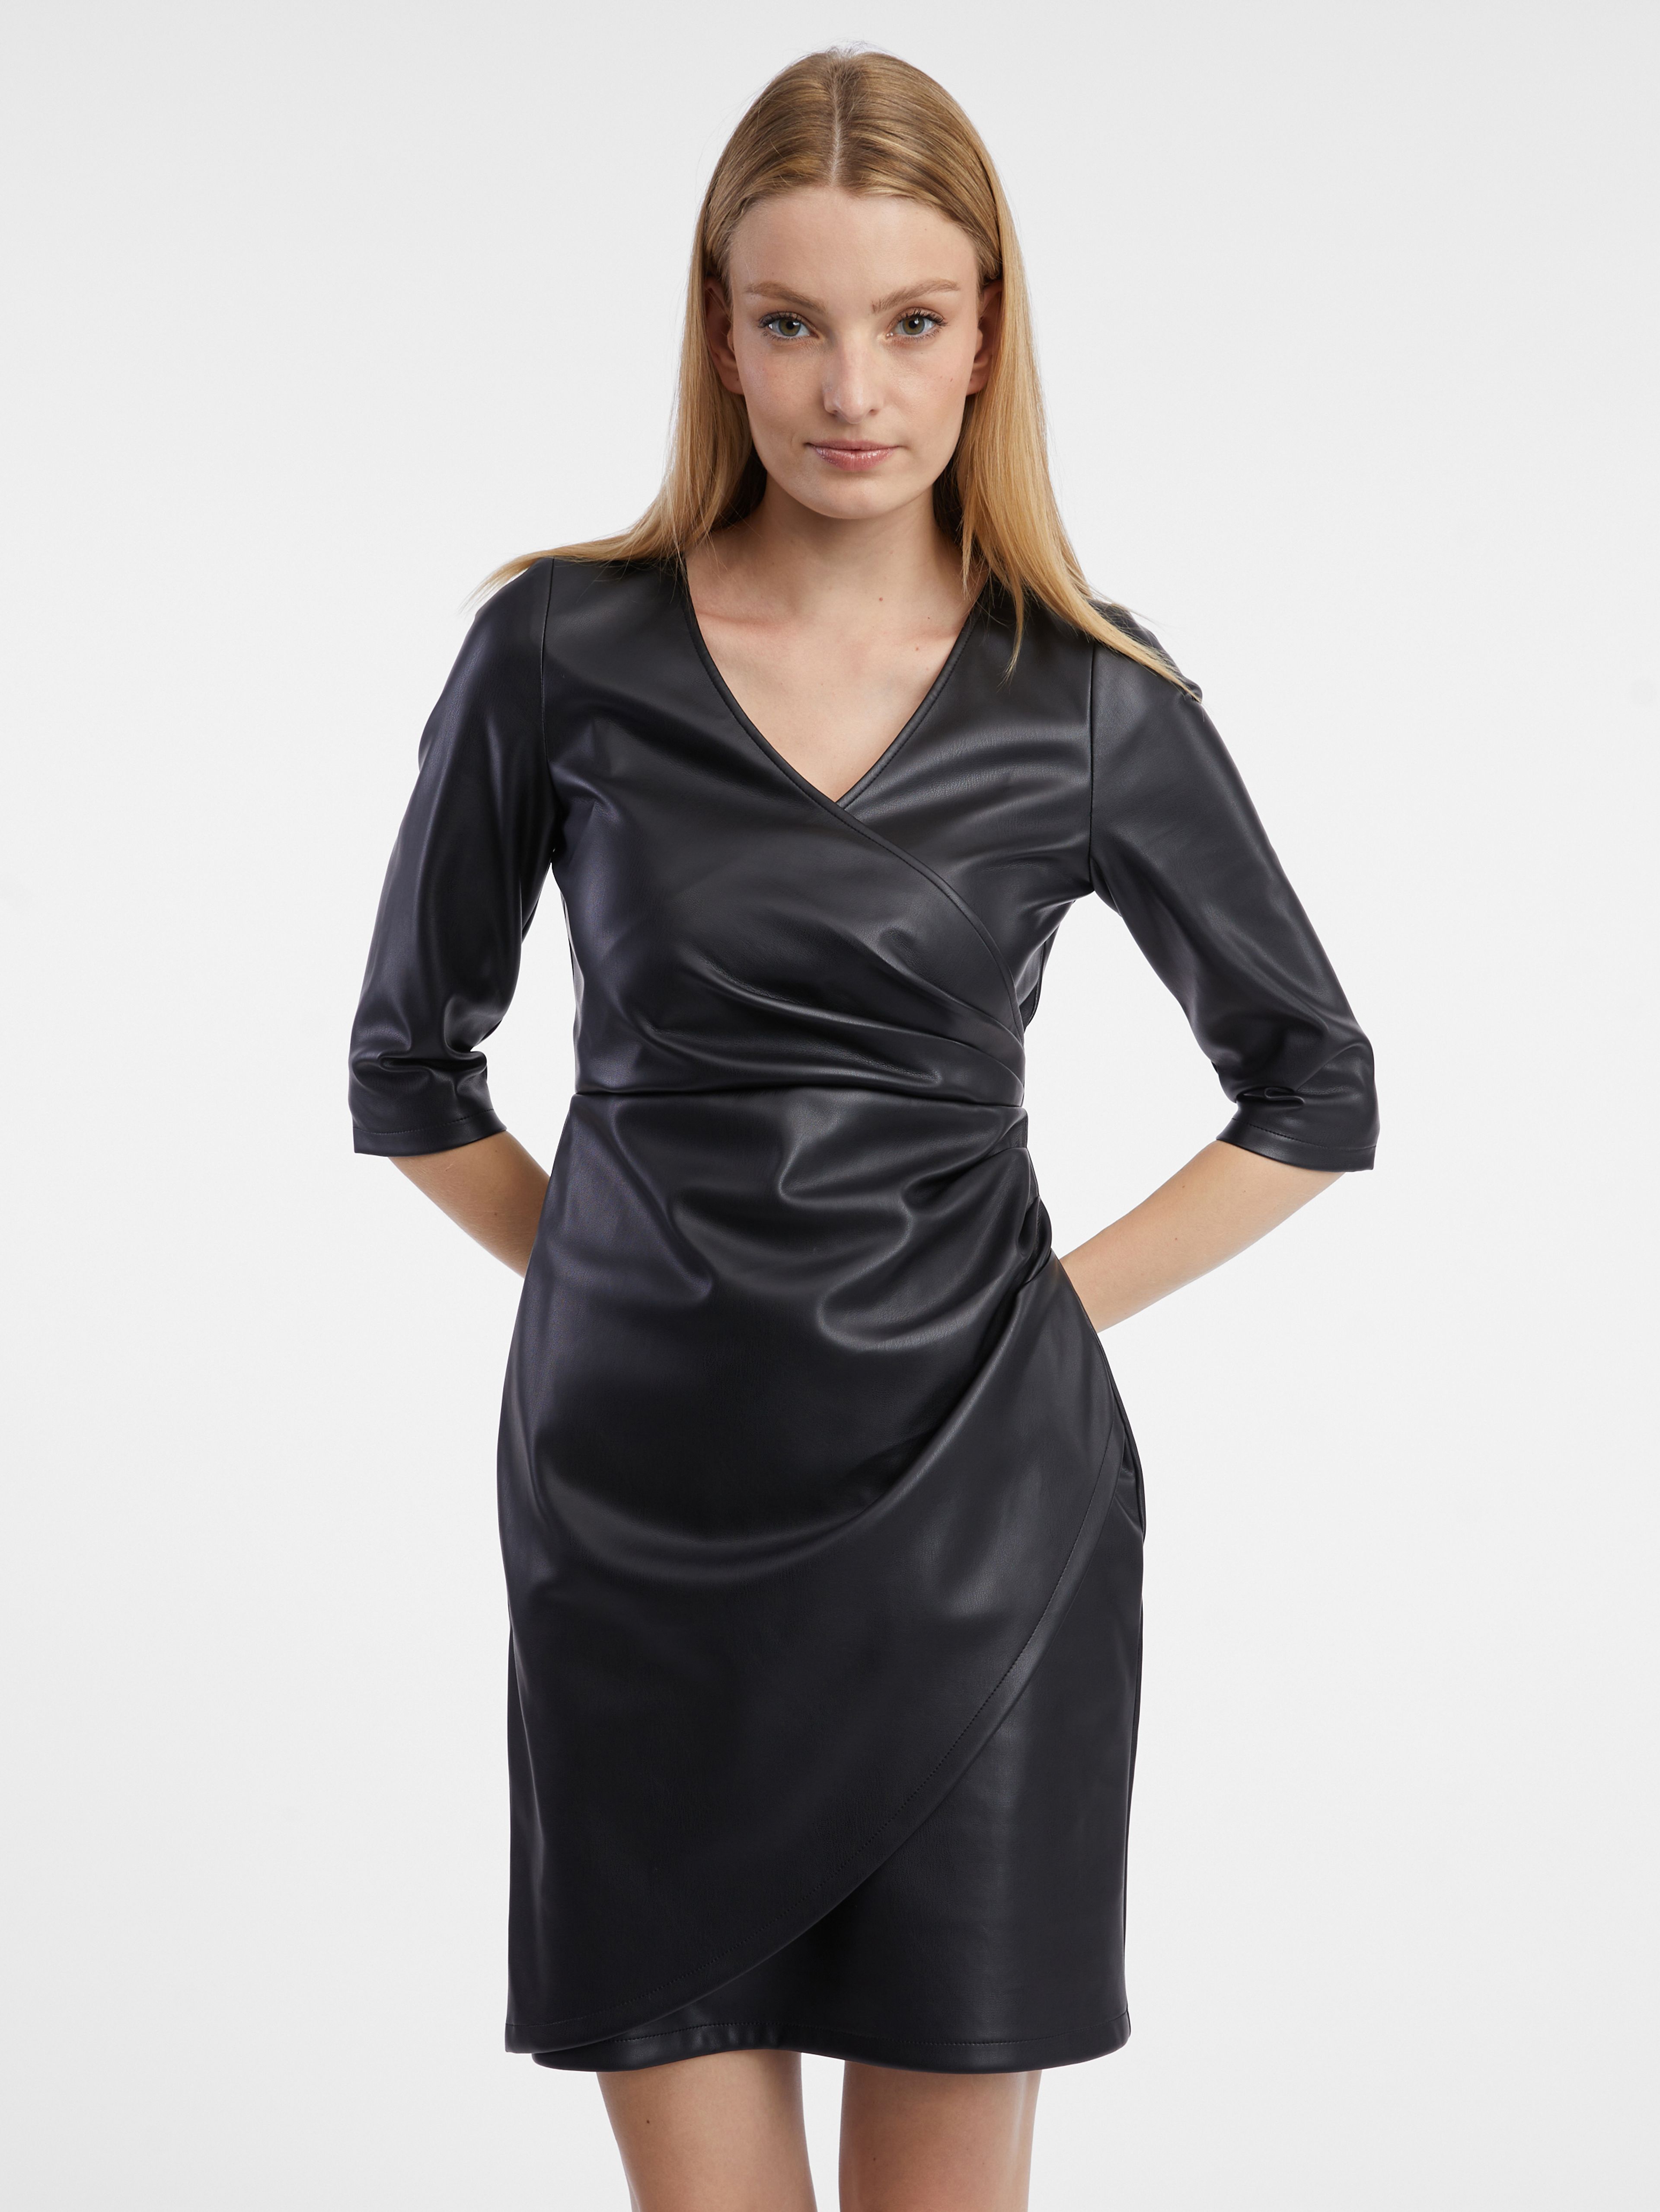 Černé dámské koženkové šaty ORSAY